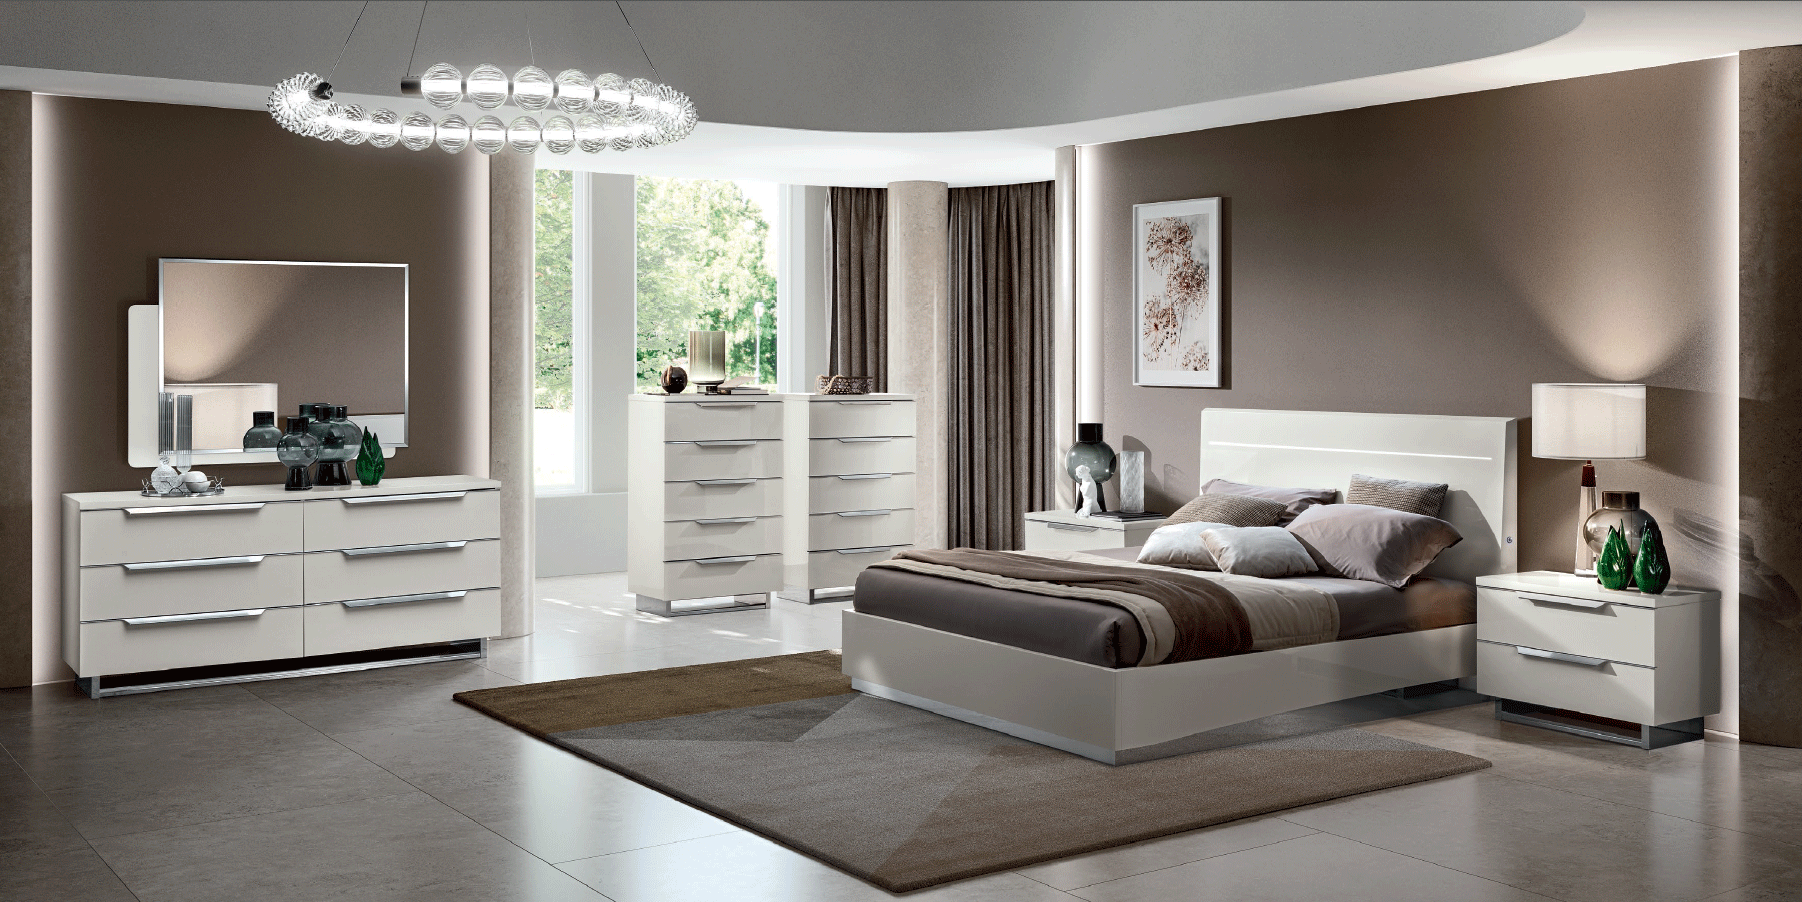 Bedroom Furniture Beds with storage Kimera Bedroom